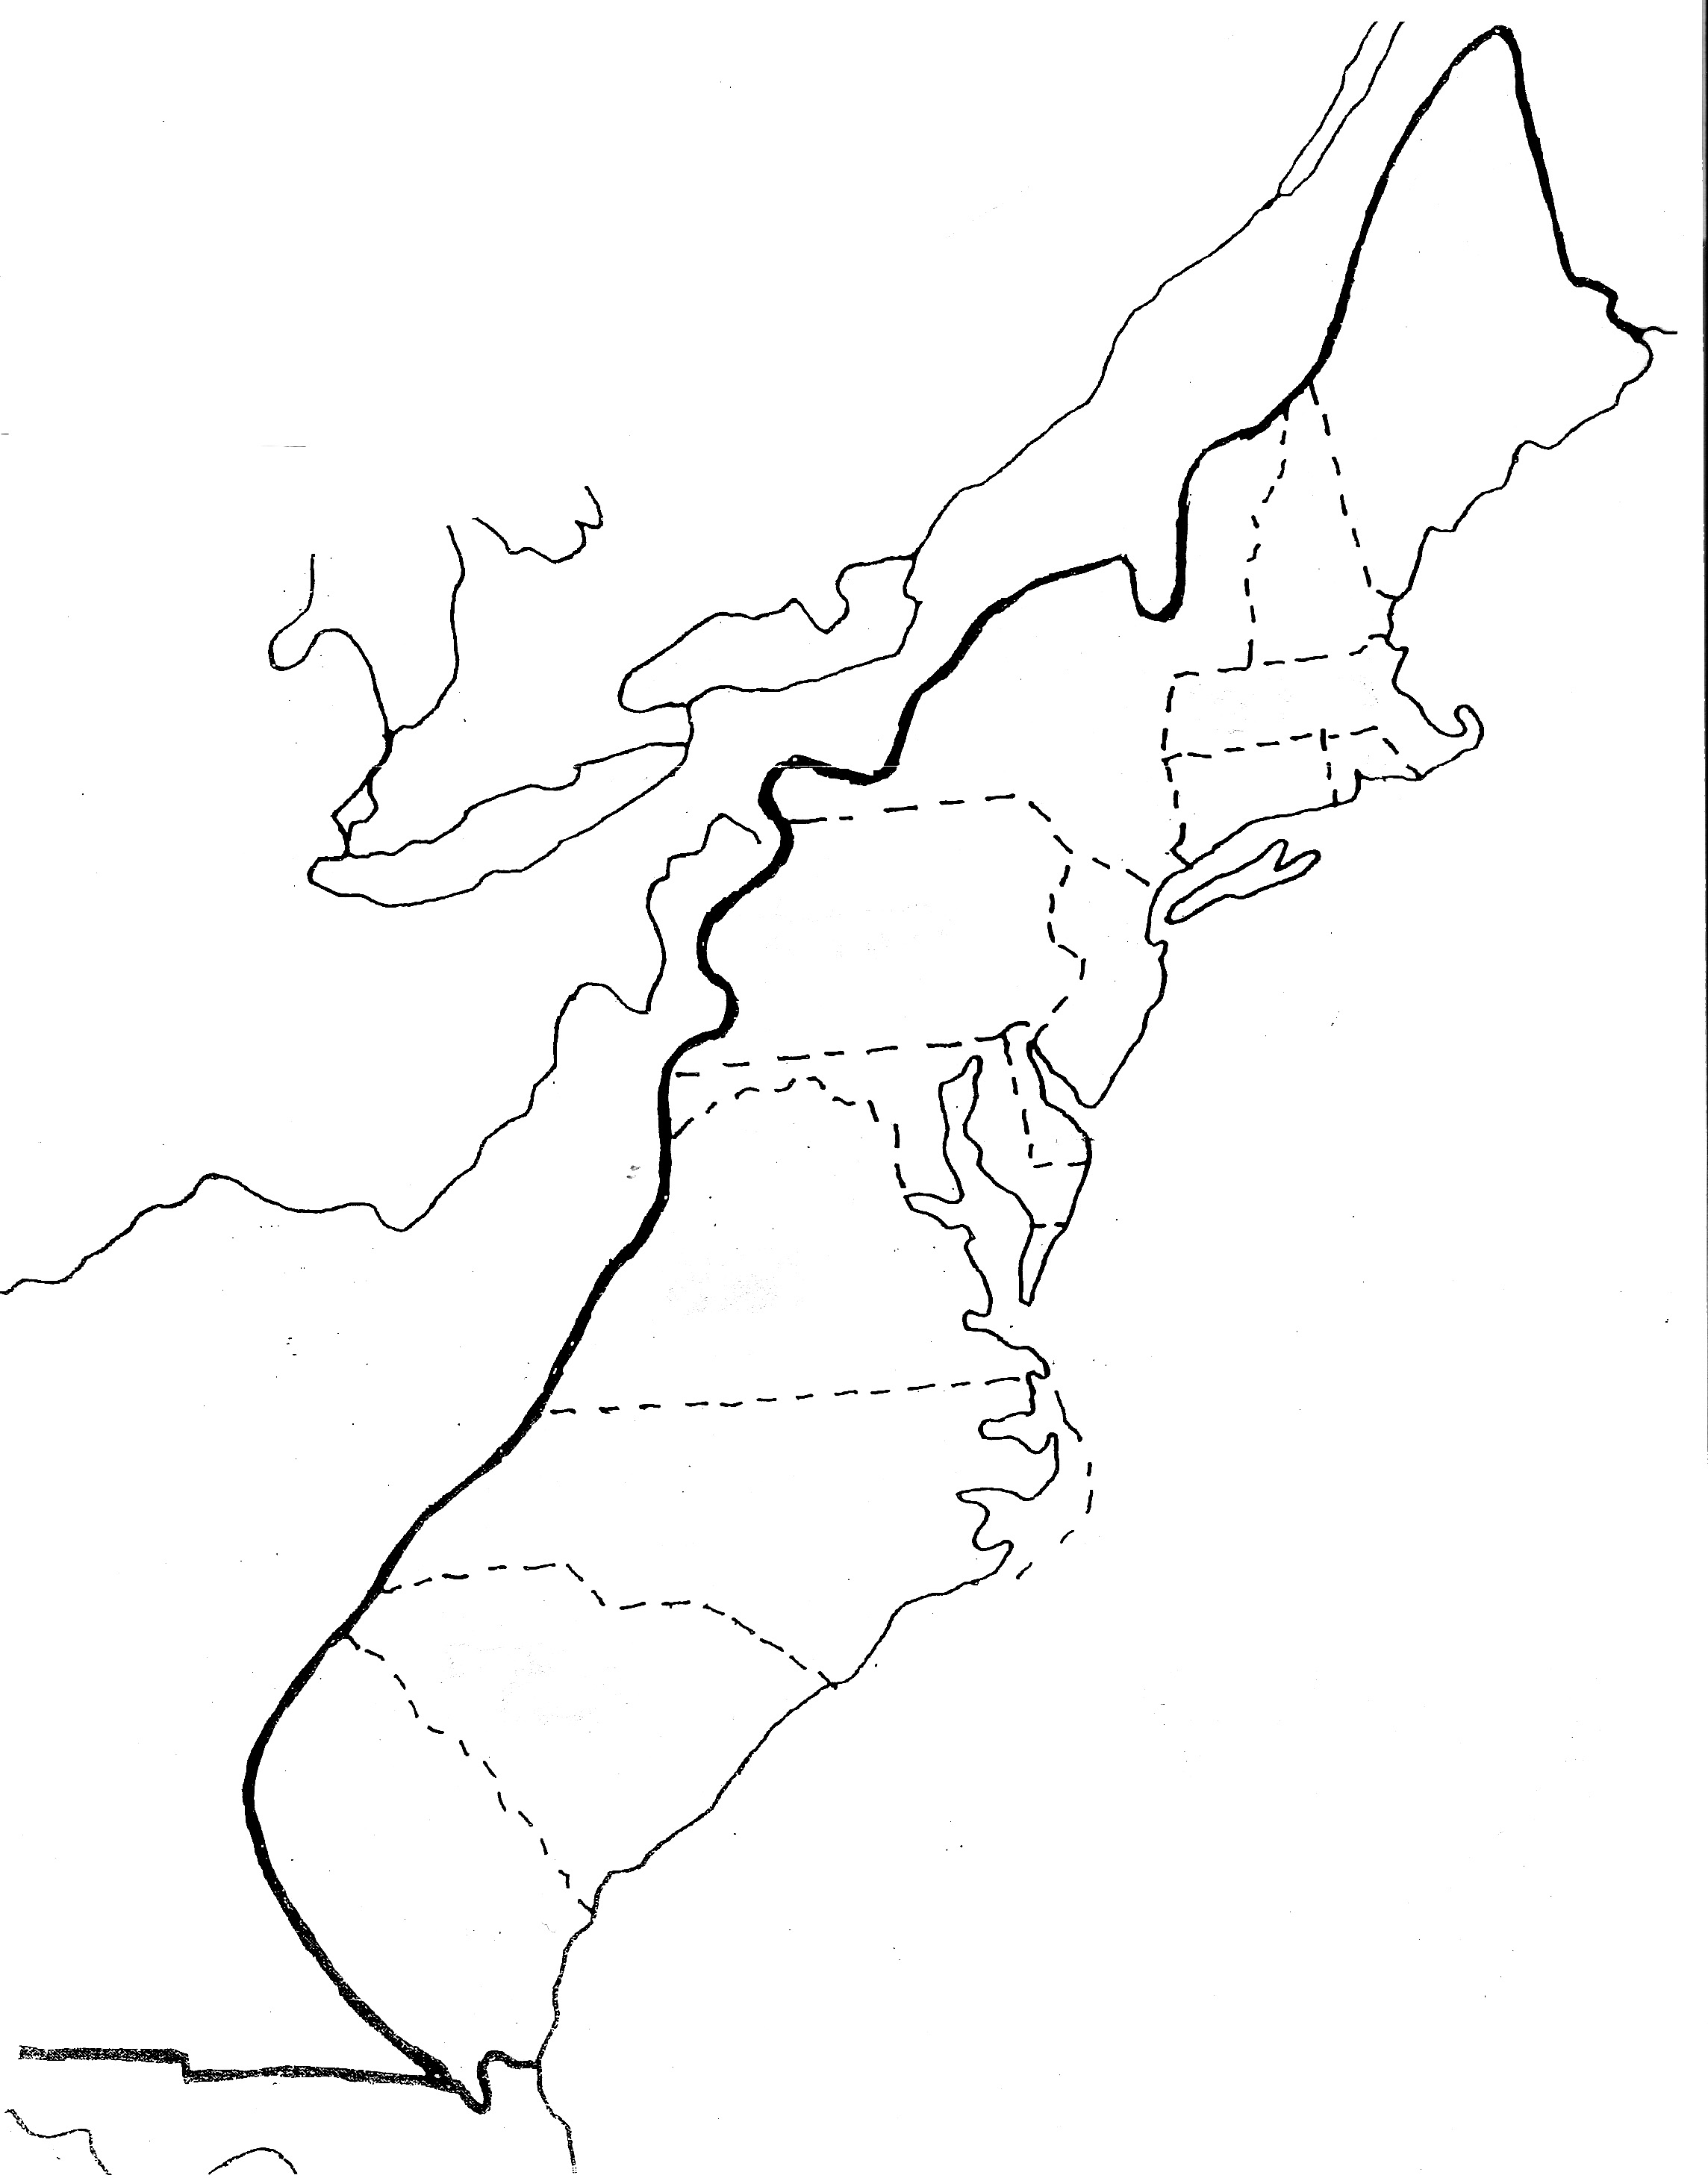 13-colonies-map-worksheet-printable-sketch-coloring-page